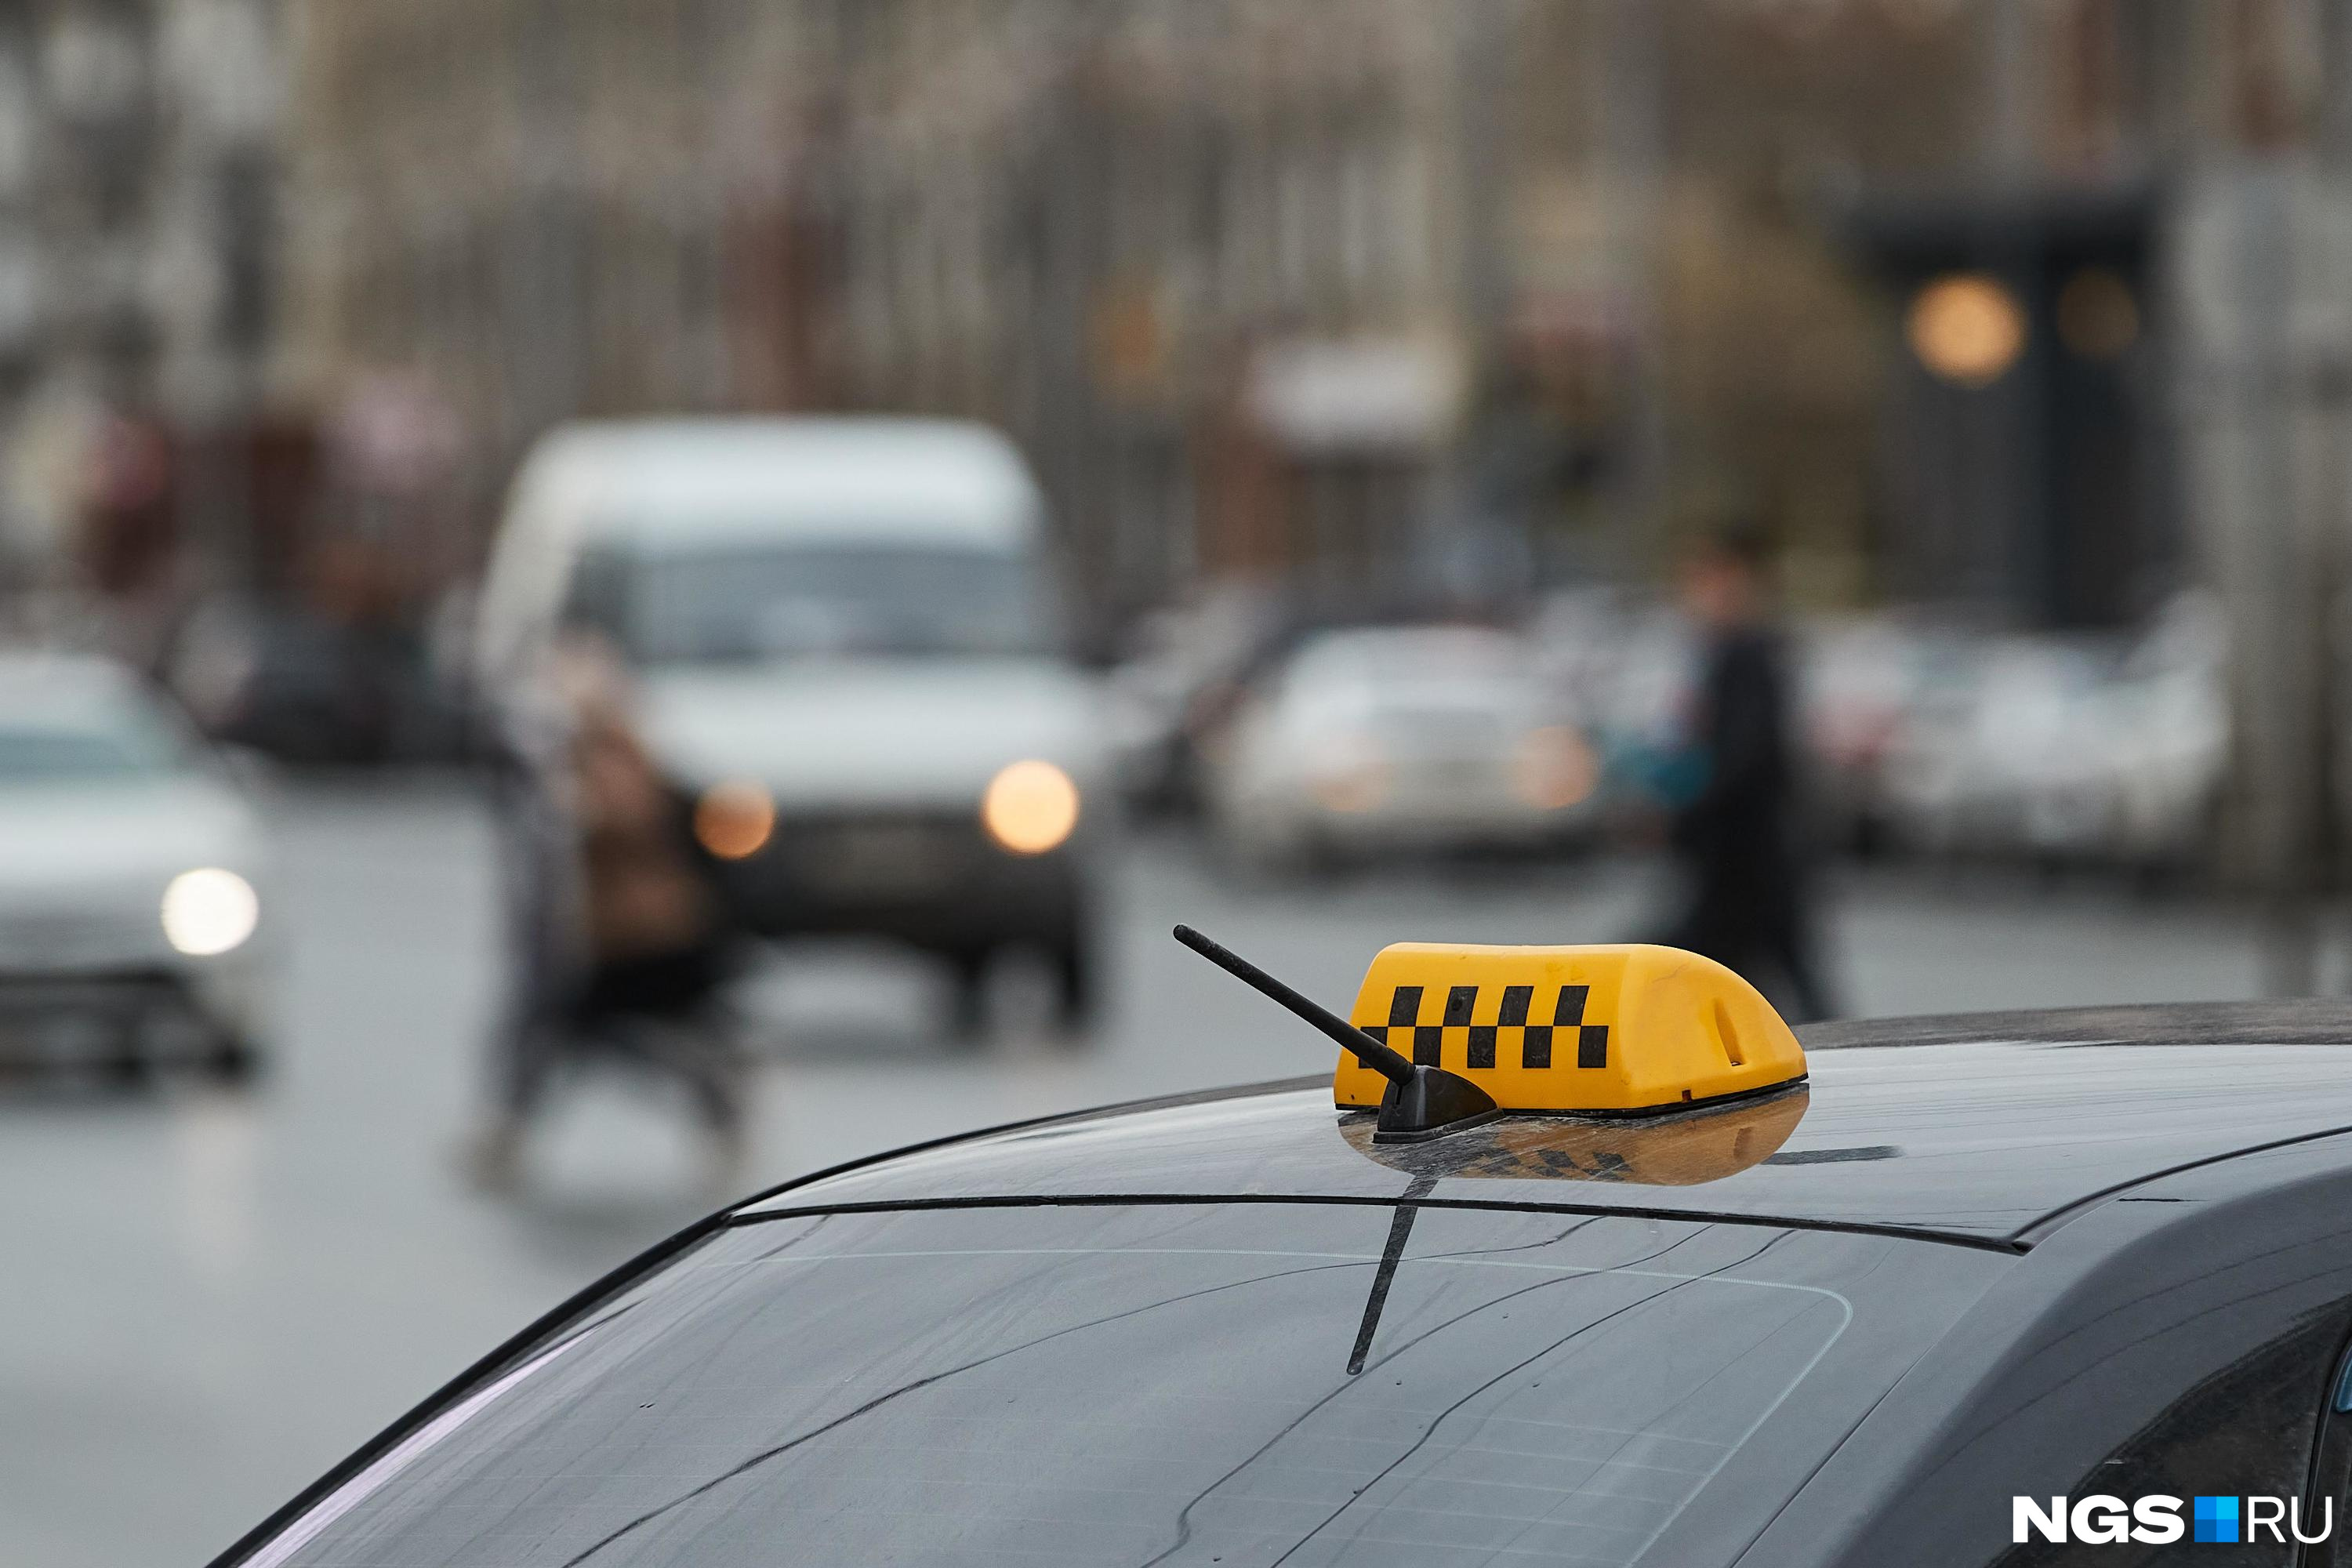 Оскорблял и распылил перцовку в лицо пассажирке: в Барнауле оштрафовали агрессивного таксиста